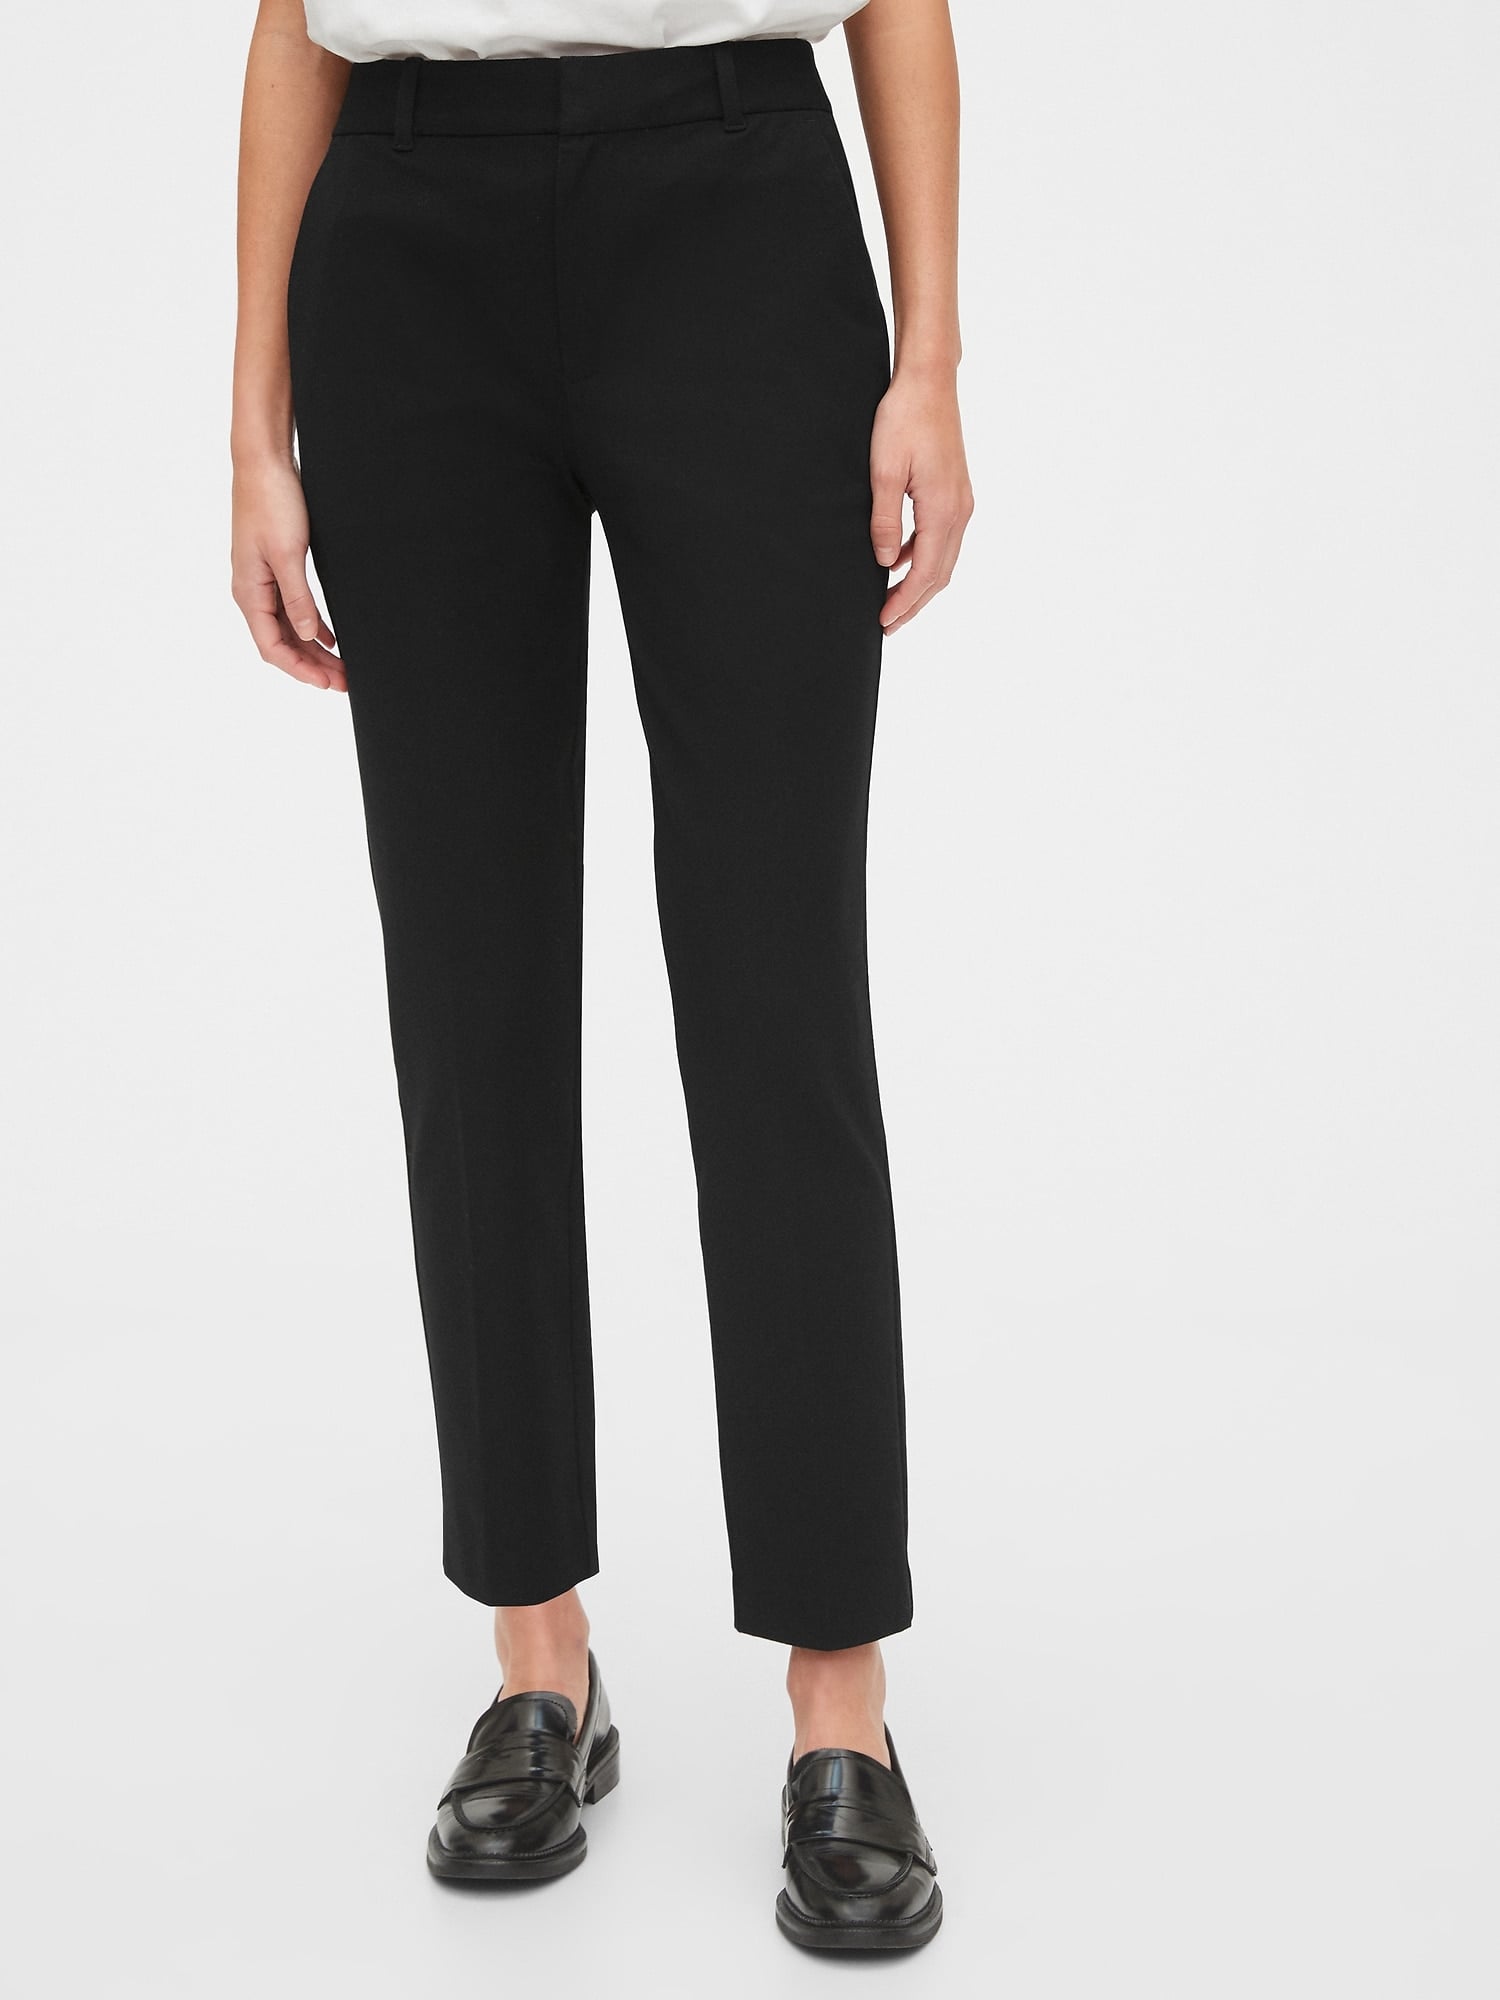 Gap Perfect Trouser Pants 8 Regular Black  eBay